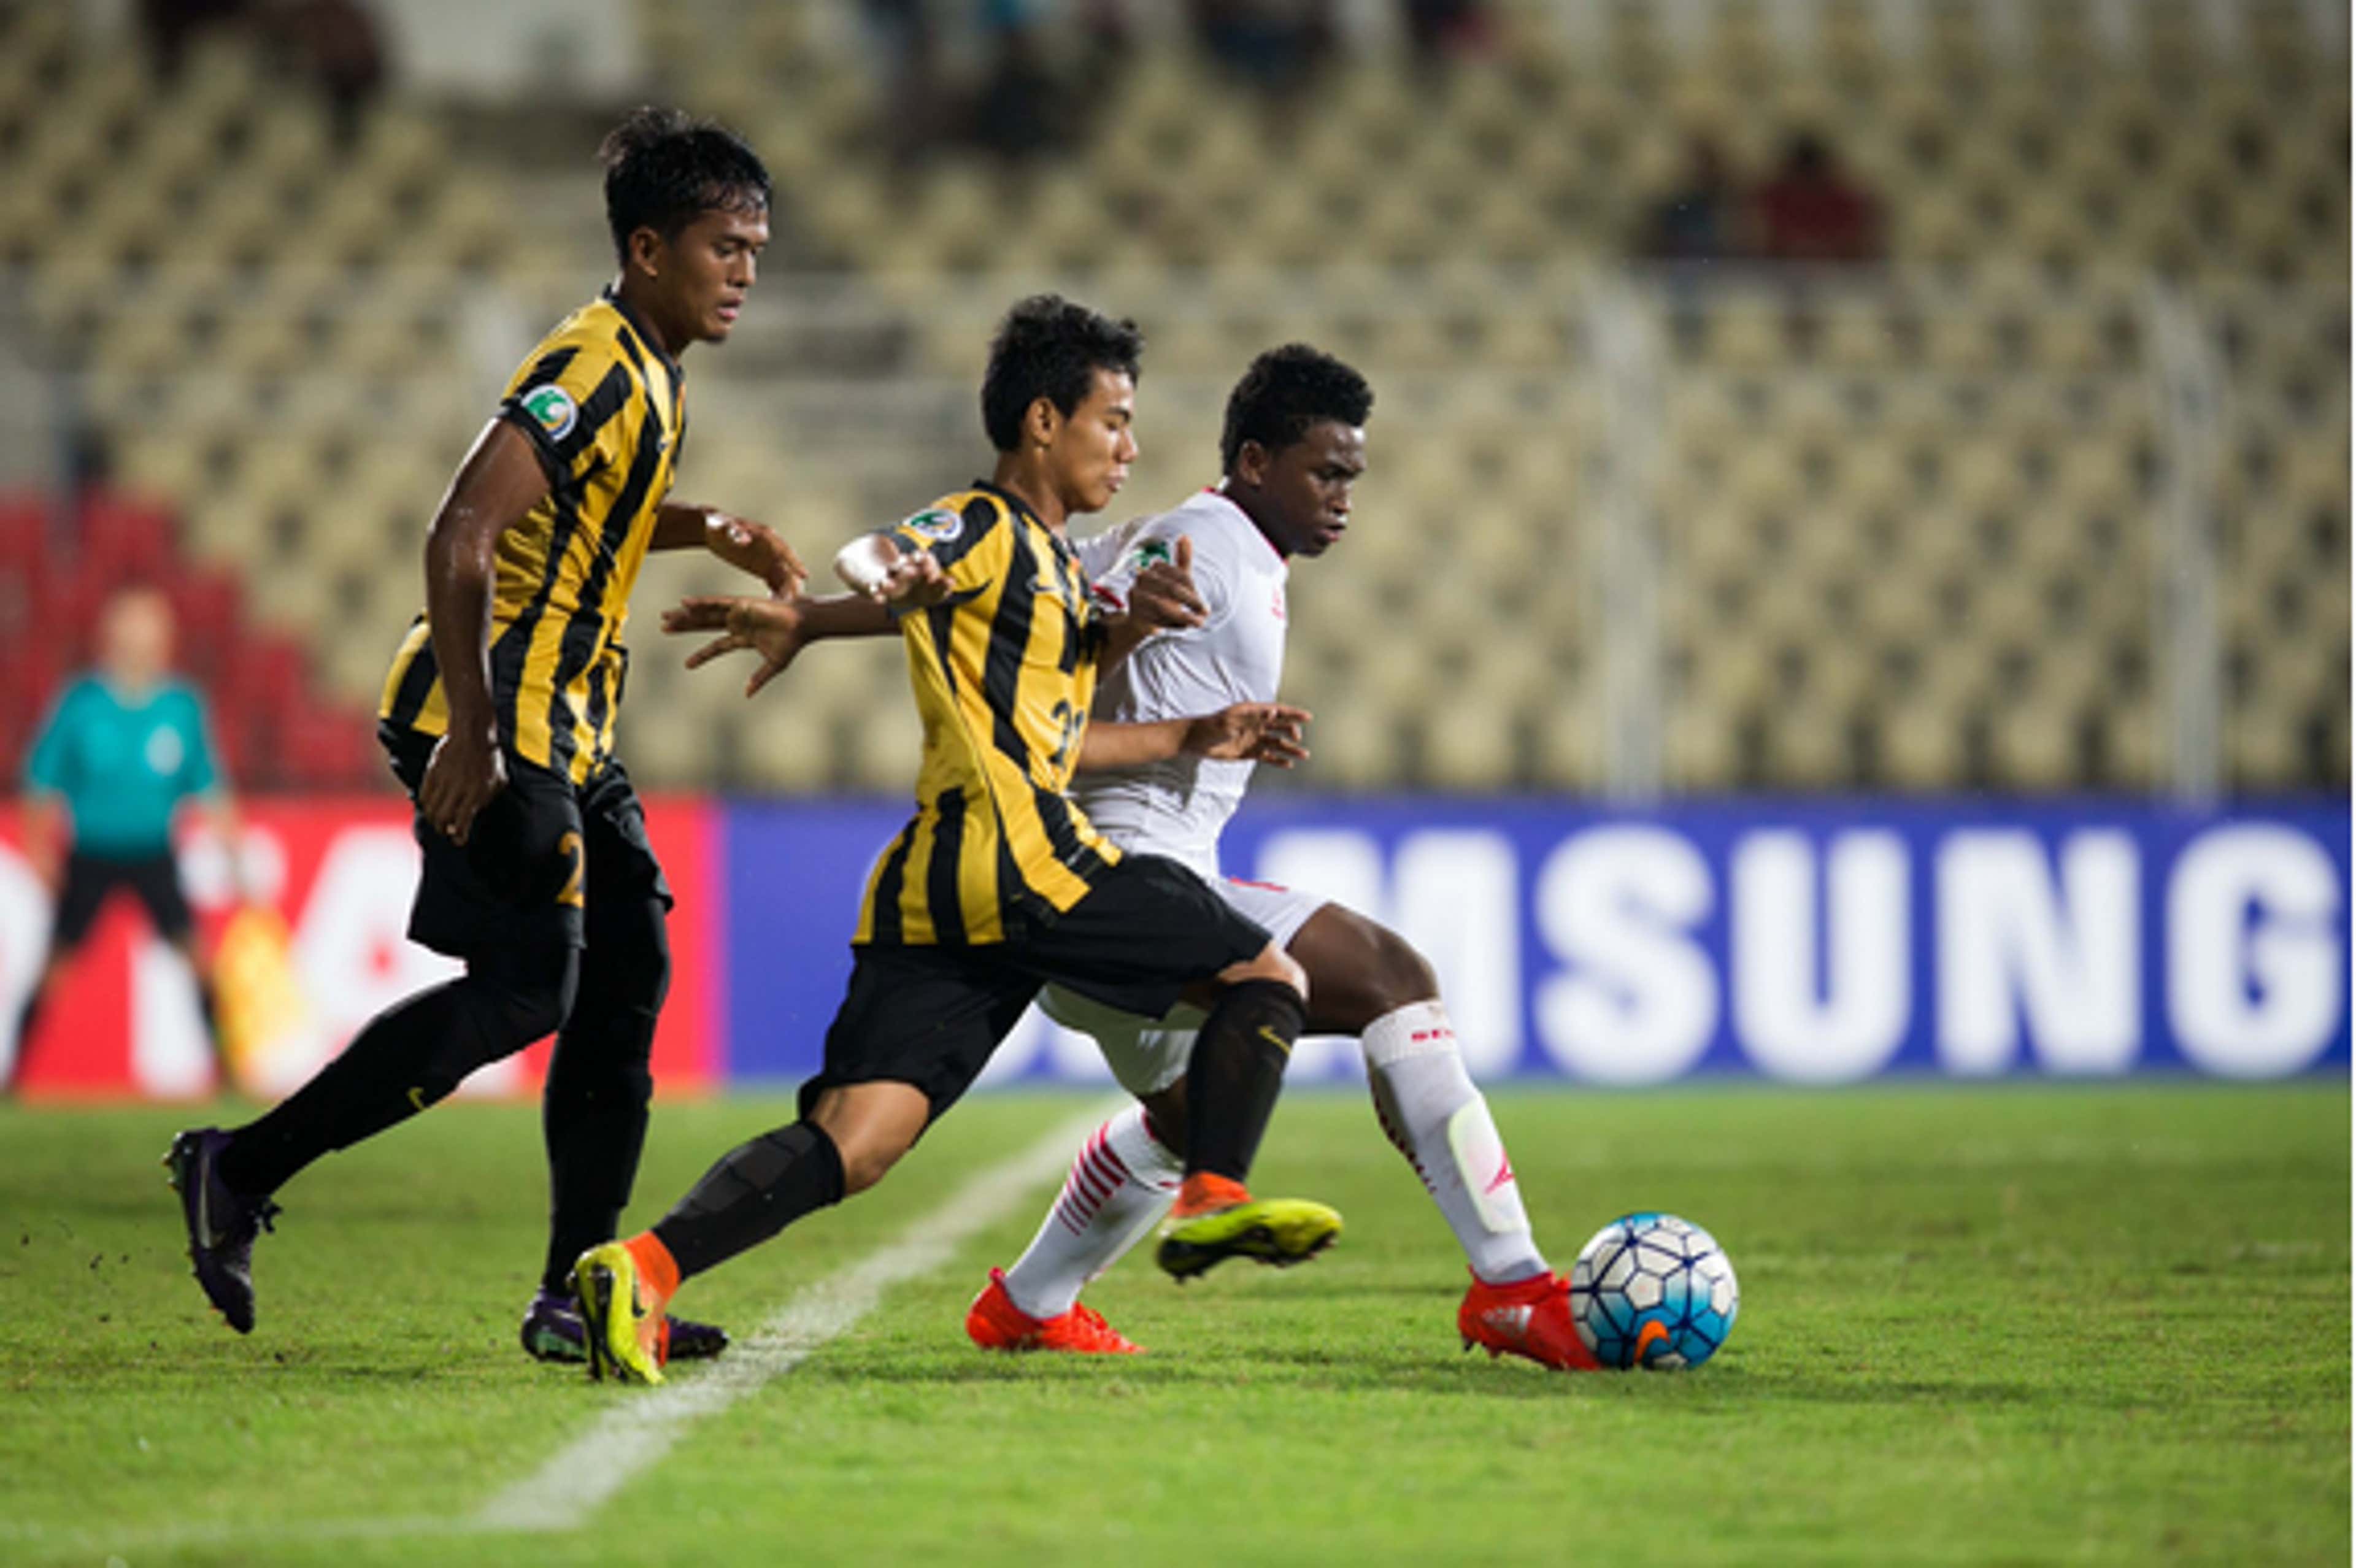 Malaysia U16 in action against Oman U16